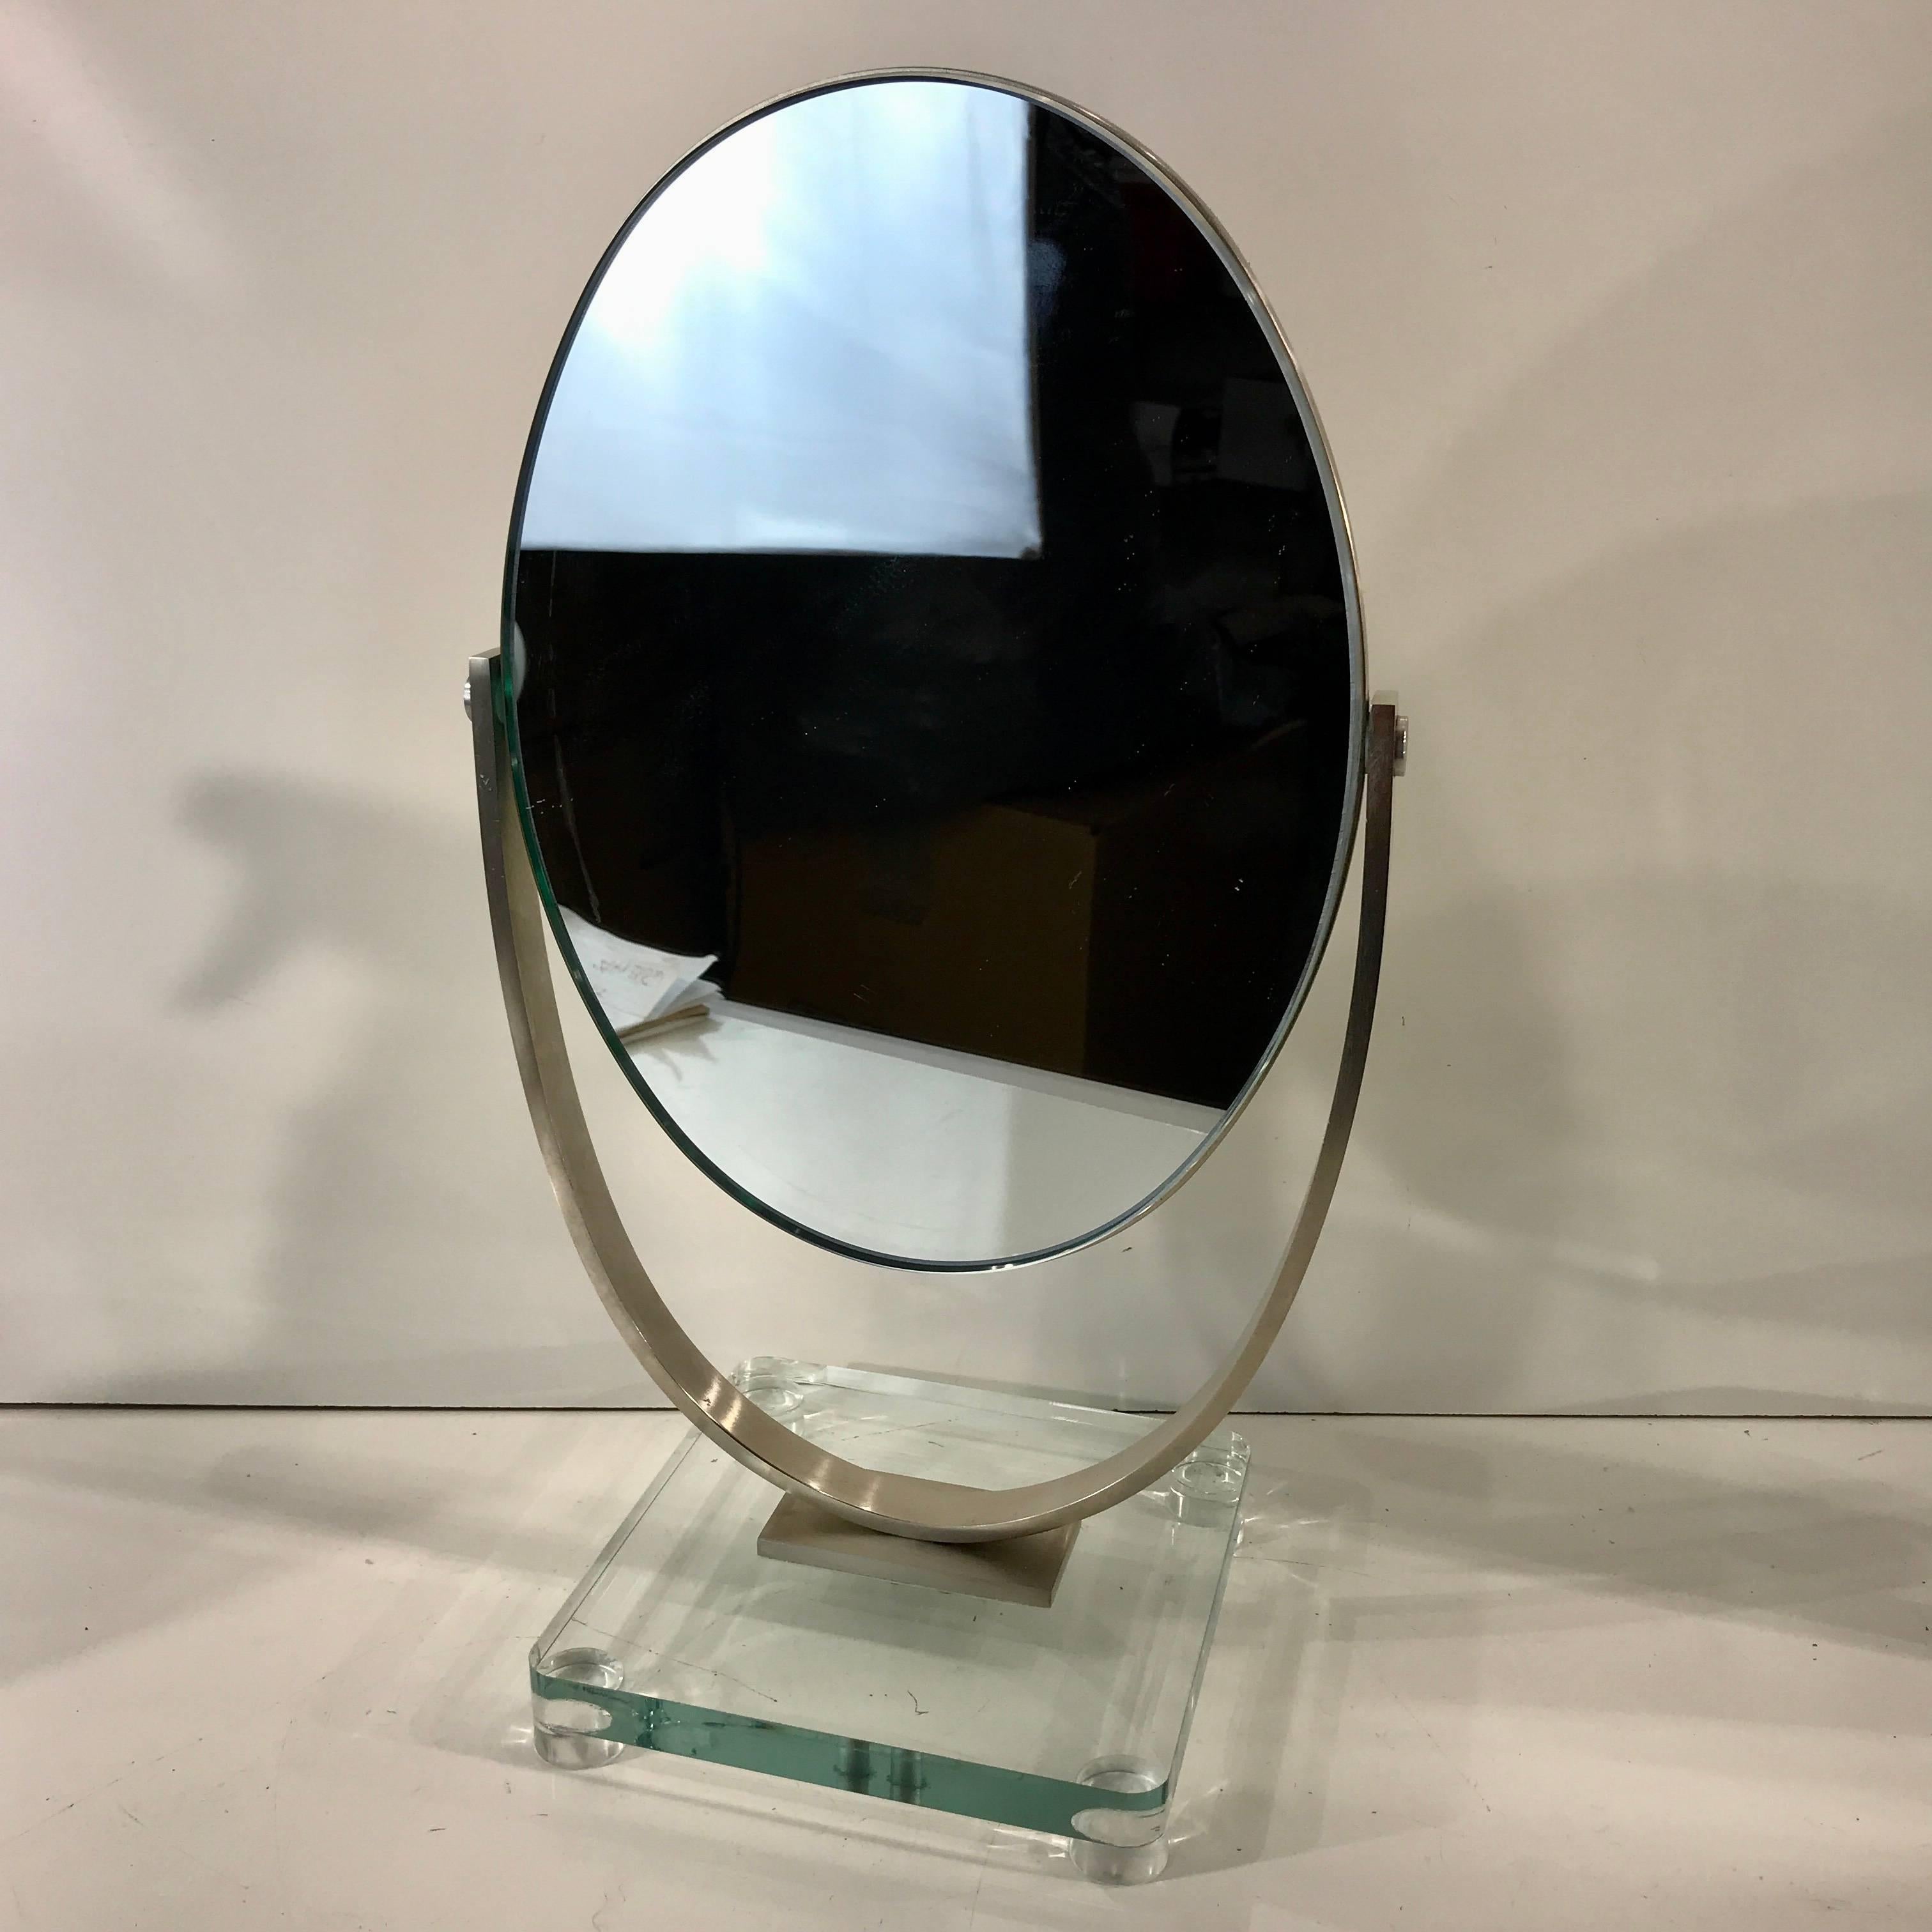 Zwei Charles Hollis Jones Vanity Spiegel, jeder ein doppelseitiger dicker Einsatz Metall montiert ovalen Spiegeln,
(Maße: 9